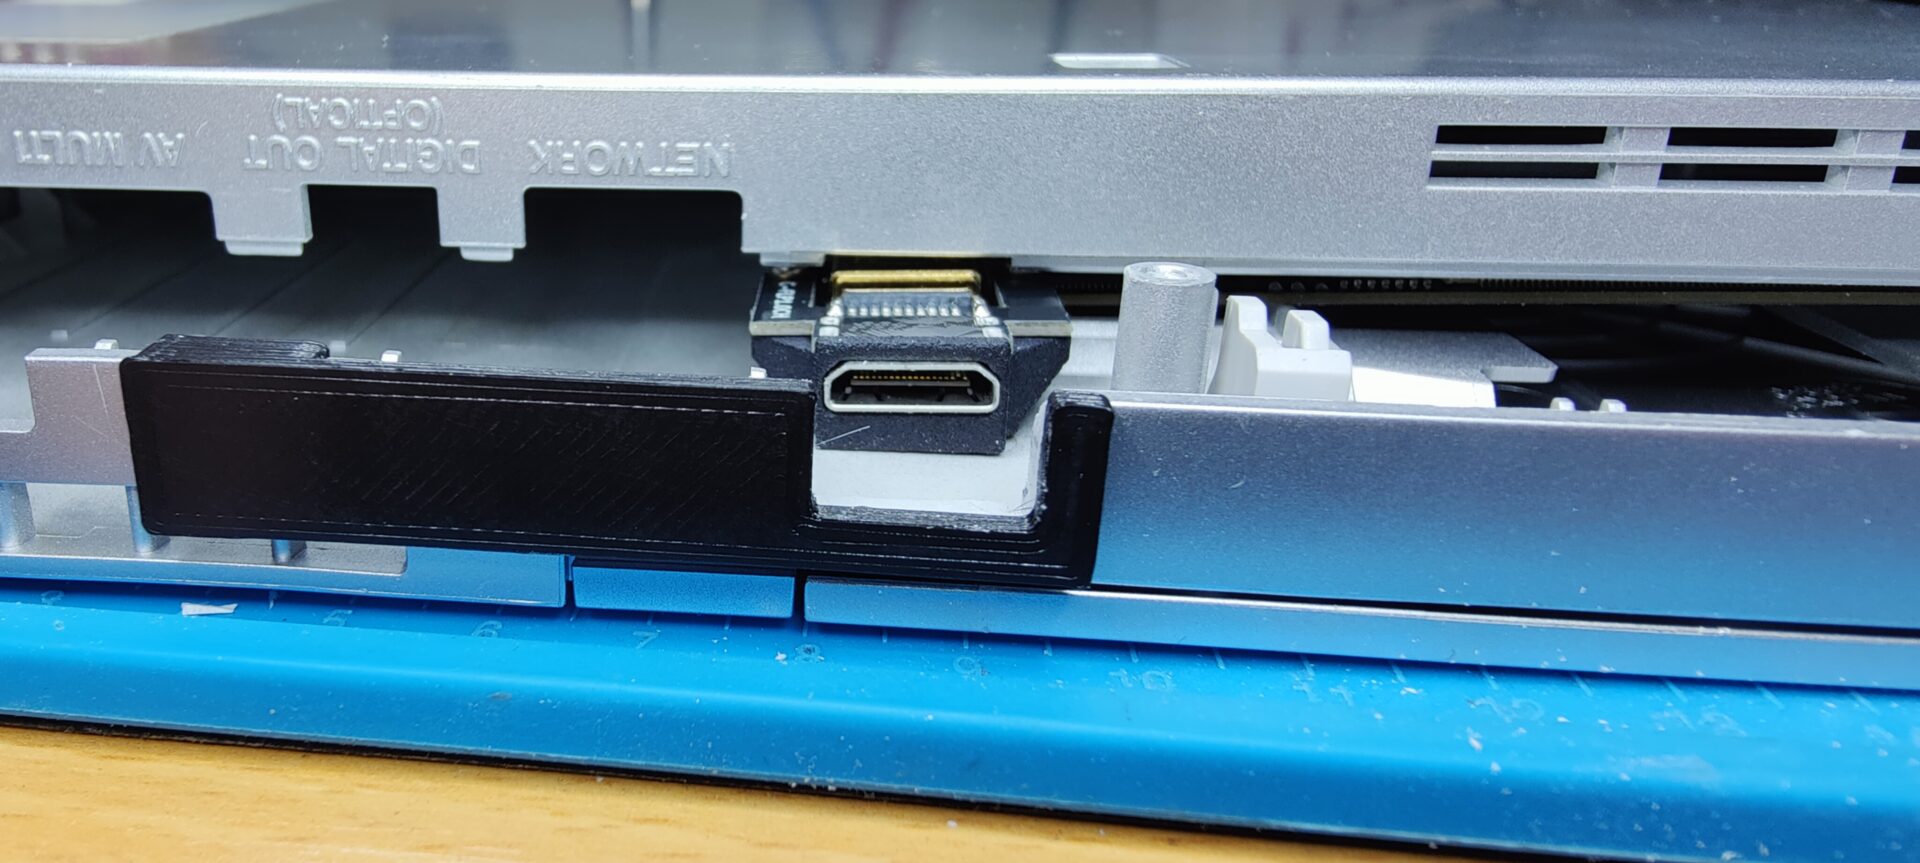 3D-gedruckte Schablone für HDMI-Gehäuseaussparung